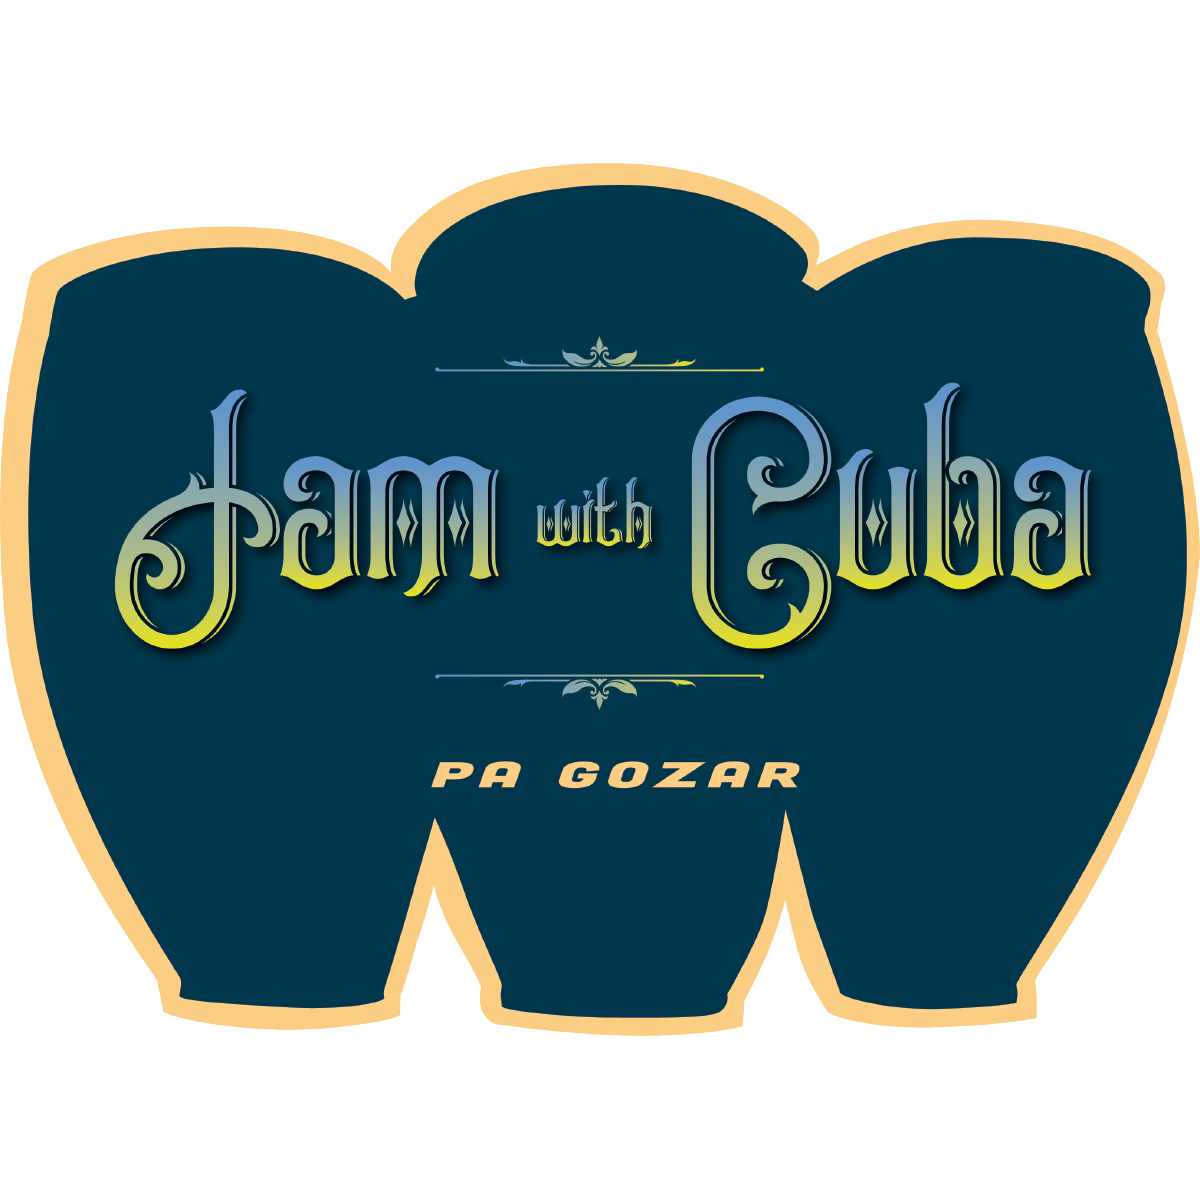 Jam With Cuba